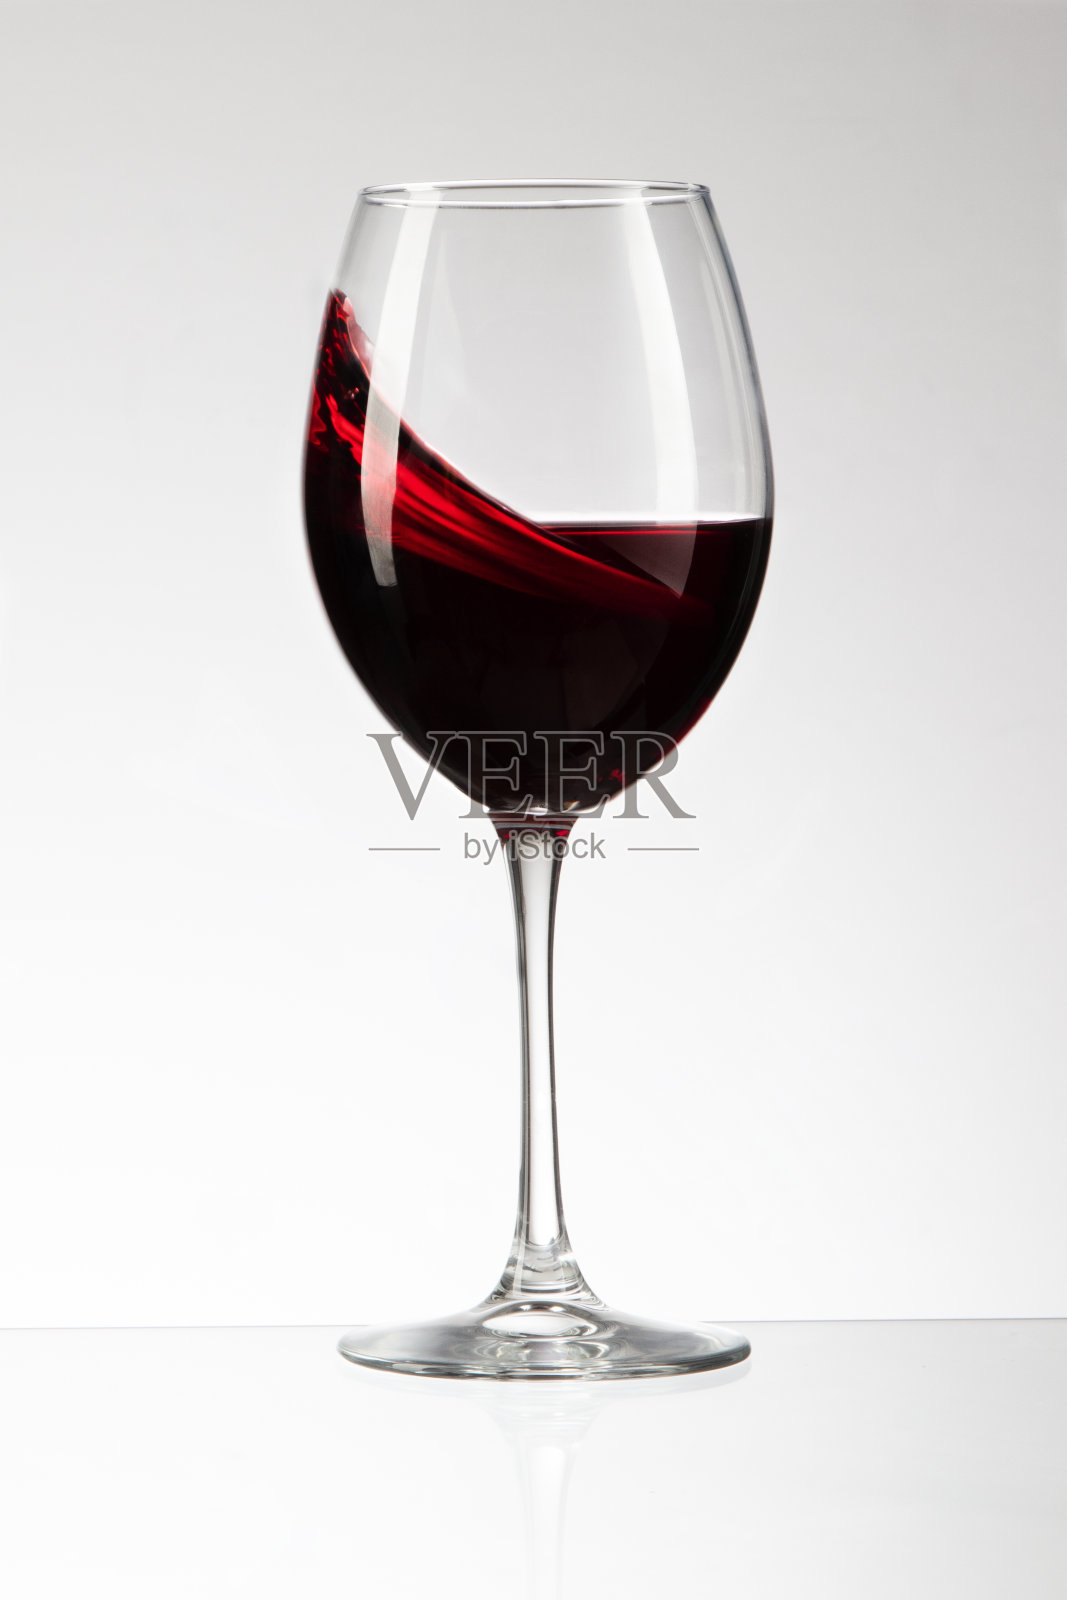 葡萄酒在酒杯中流动照片摄影图片